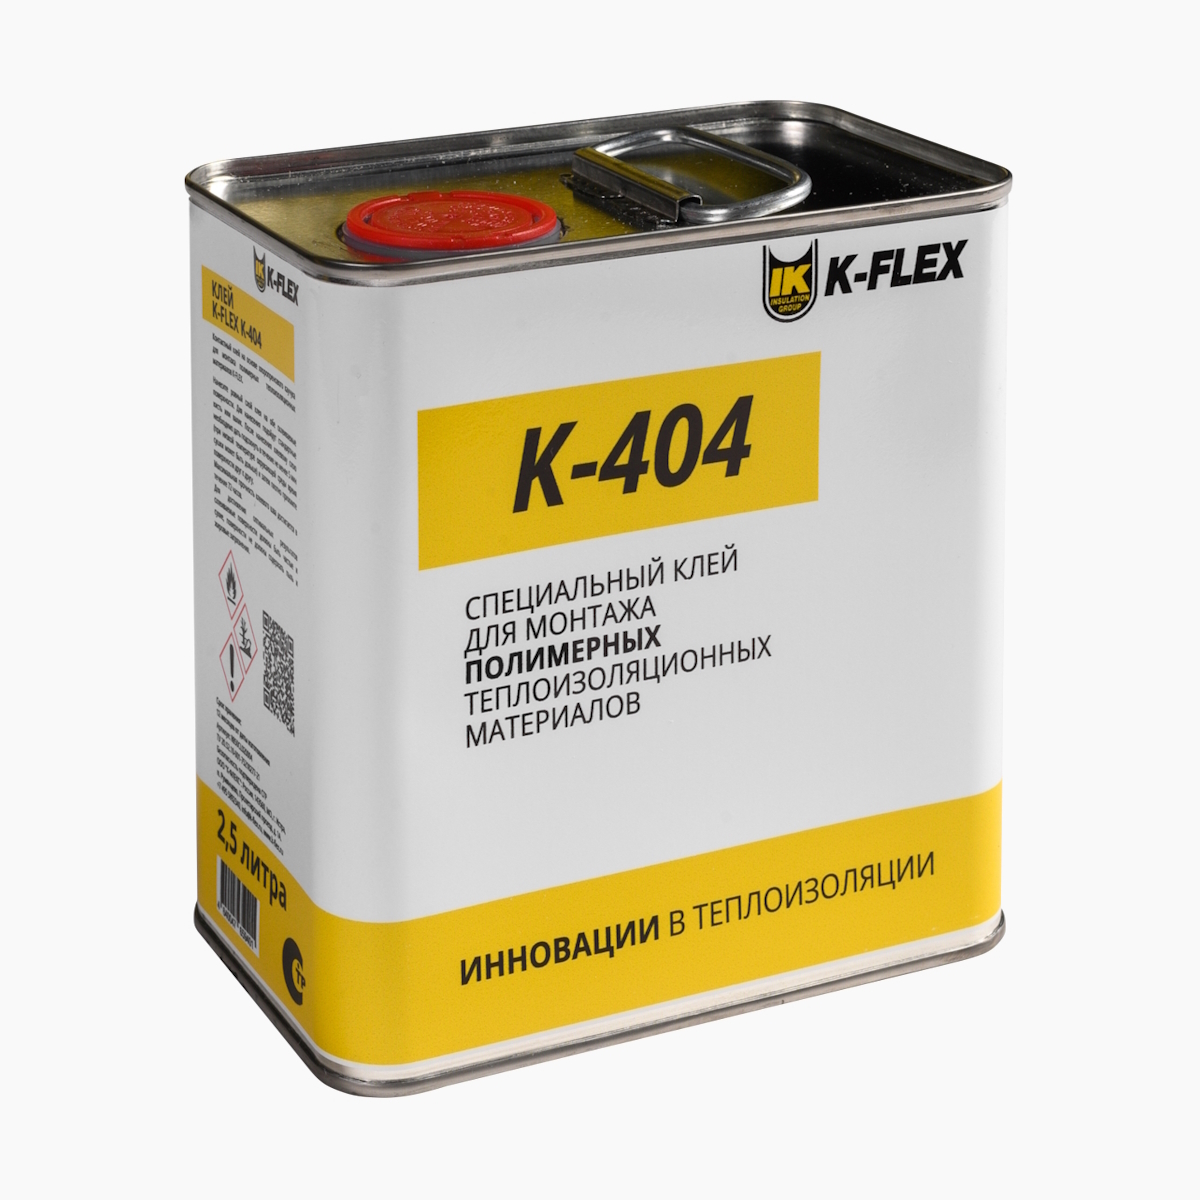 K flex pe compact. Клей k-Flex 2,6 л k 467. Клей k-Flex k 414 2,6 л. Клей для изоляции k-Flex. Клей для трубной изоляции k-Flex.